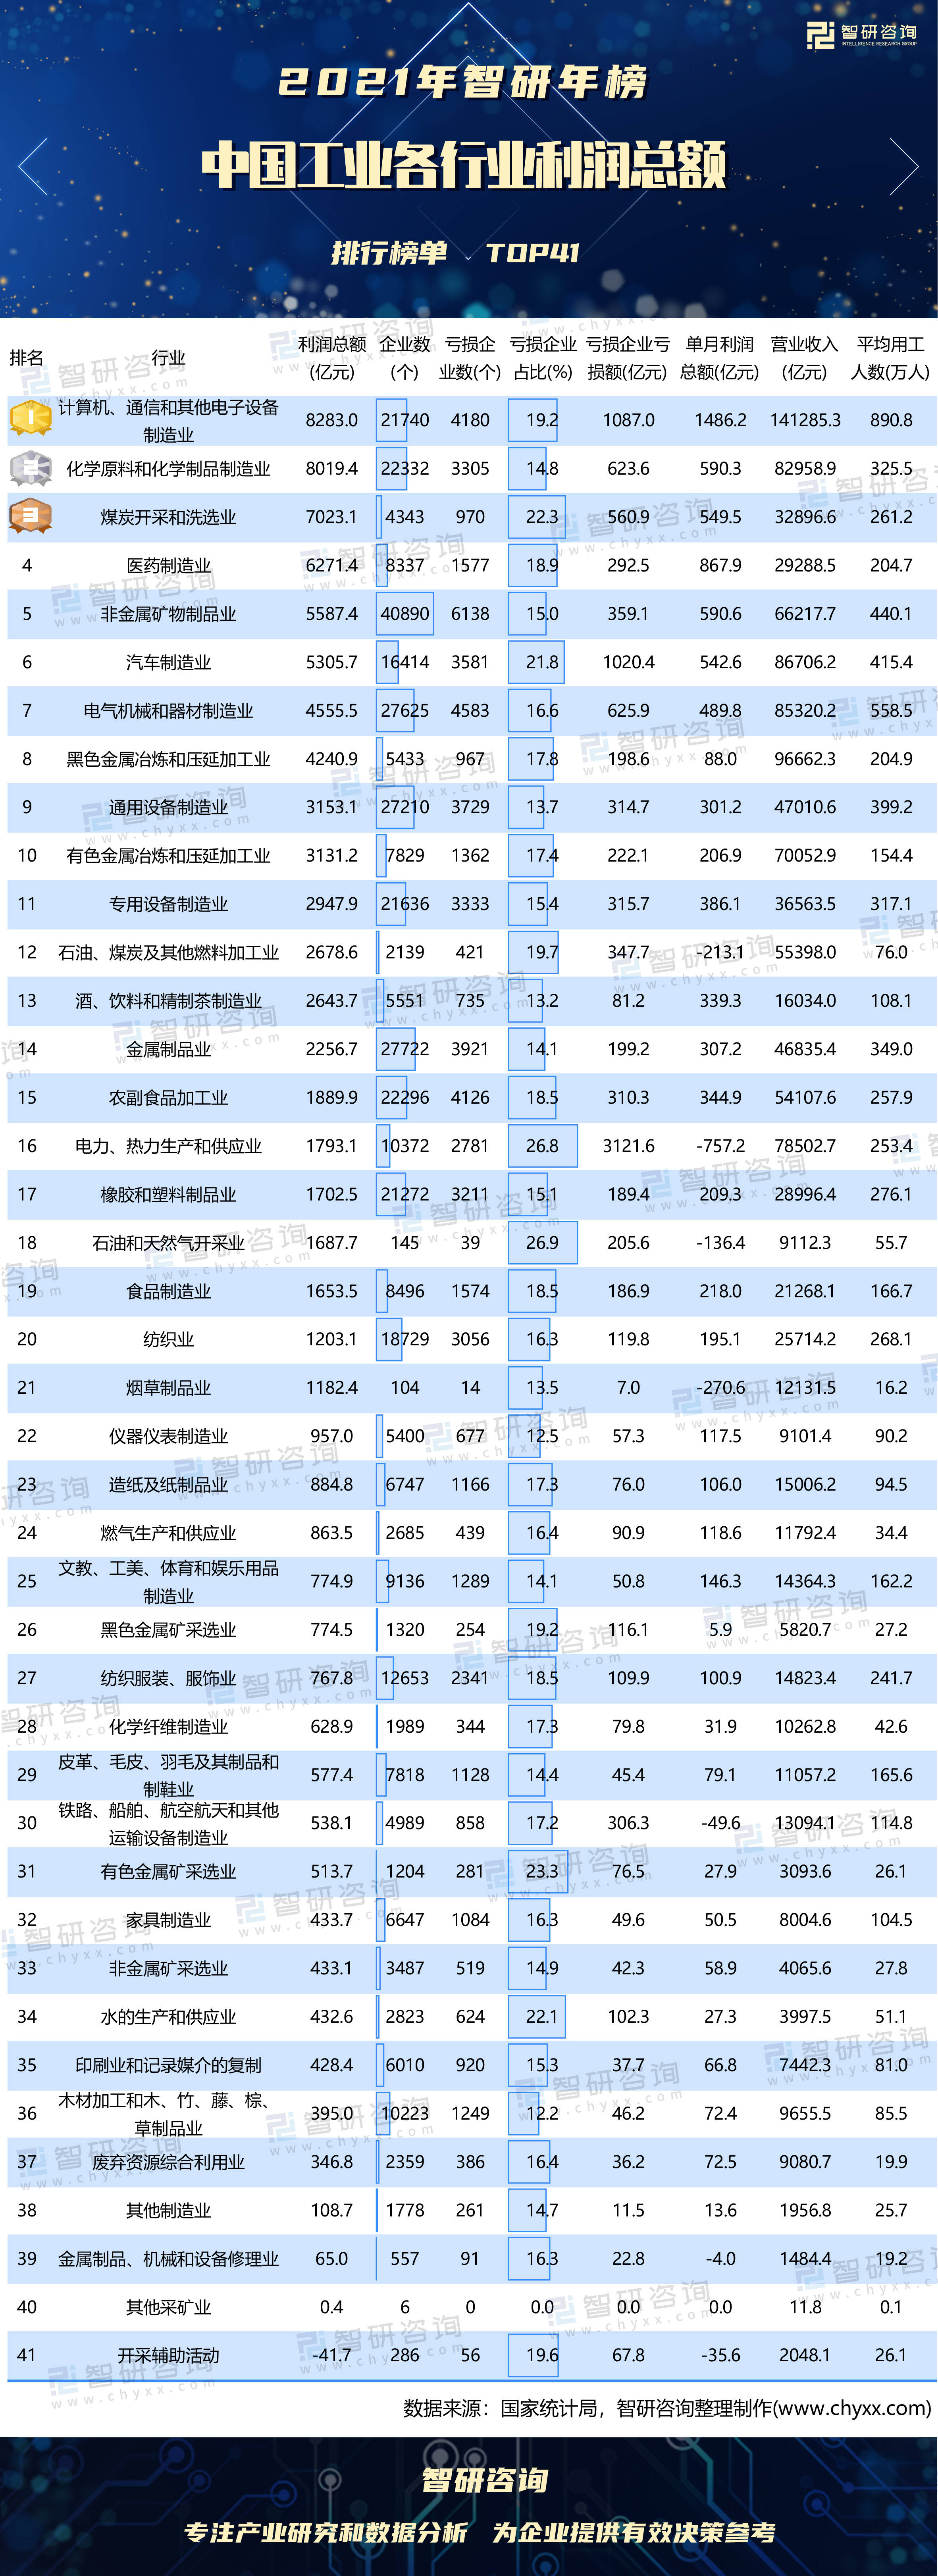 全国收入排行榜2021_2021年全国地级市财政收入10强出炉,江苏4城入围,嘉兴、潍坊逆袭